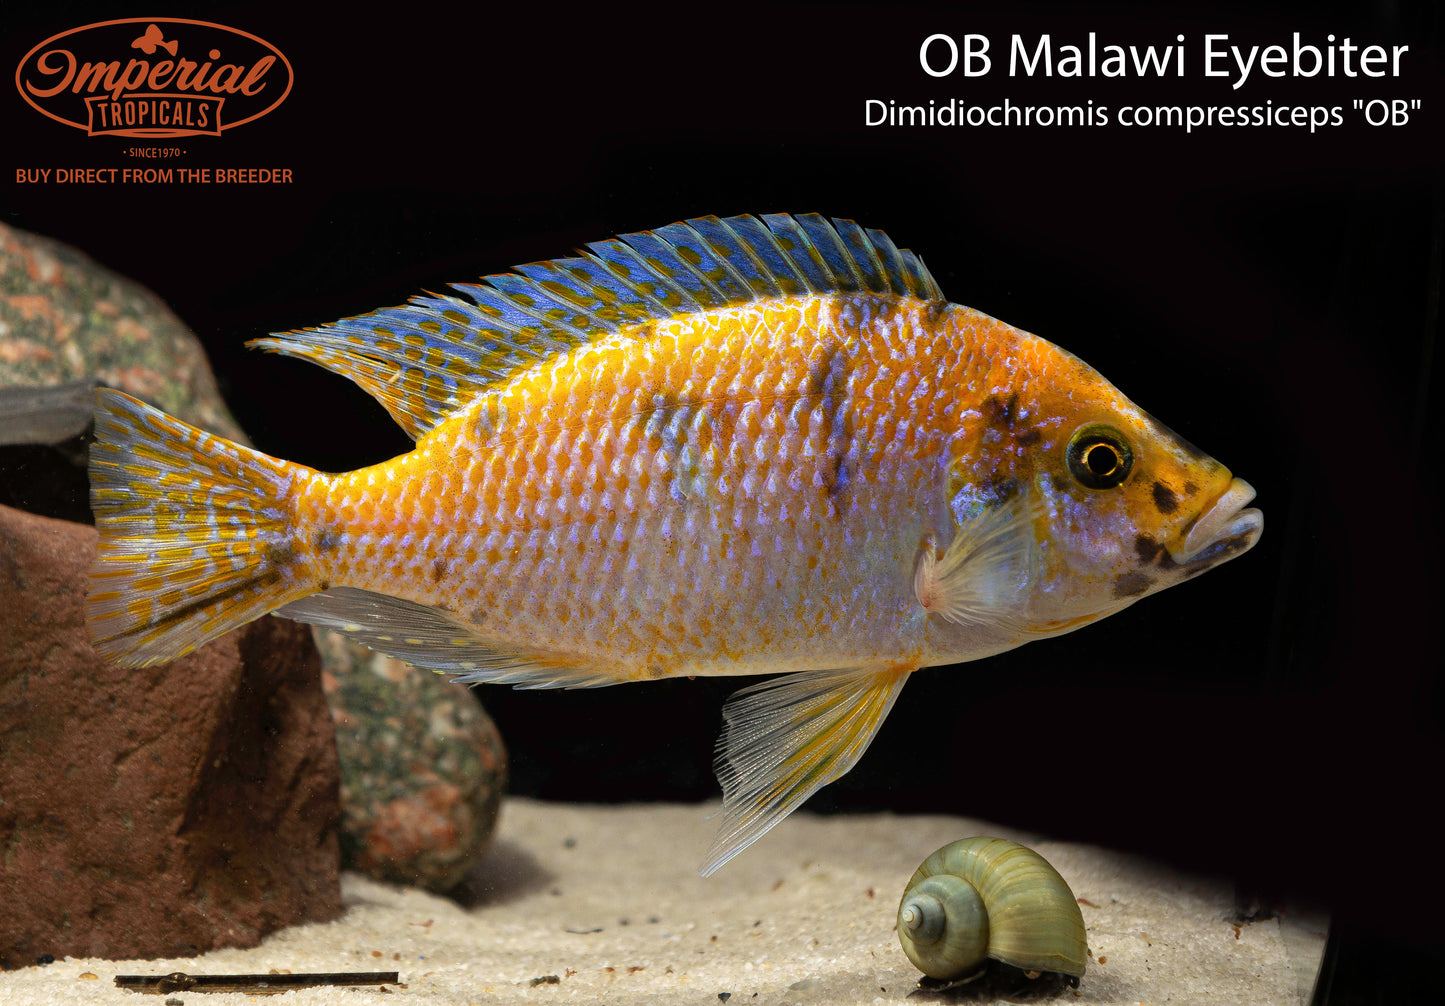 OB Malawi Eyebiter